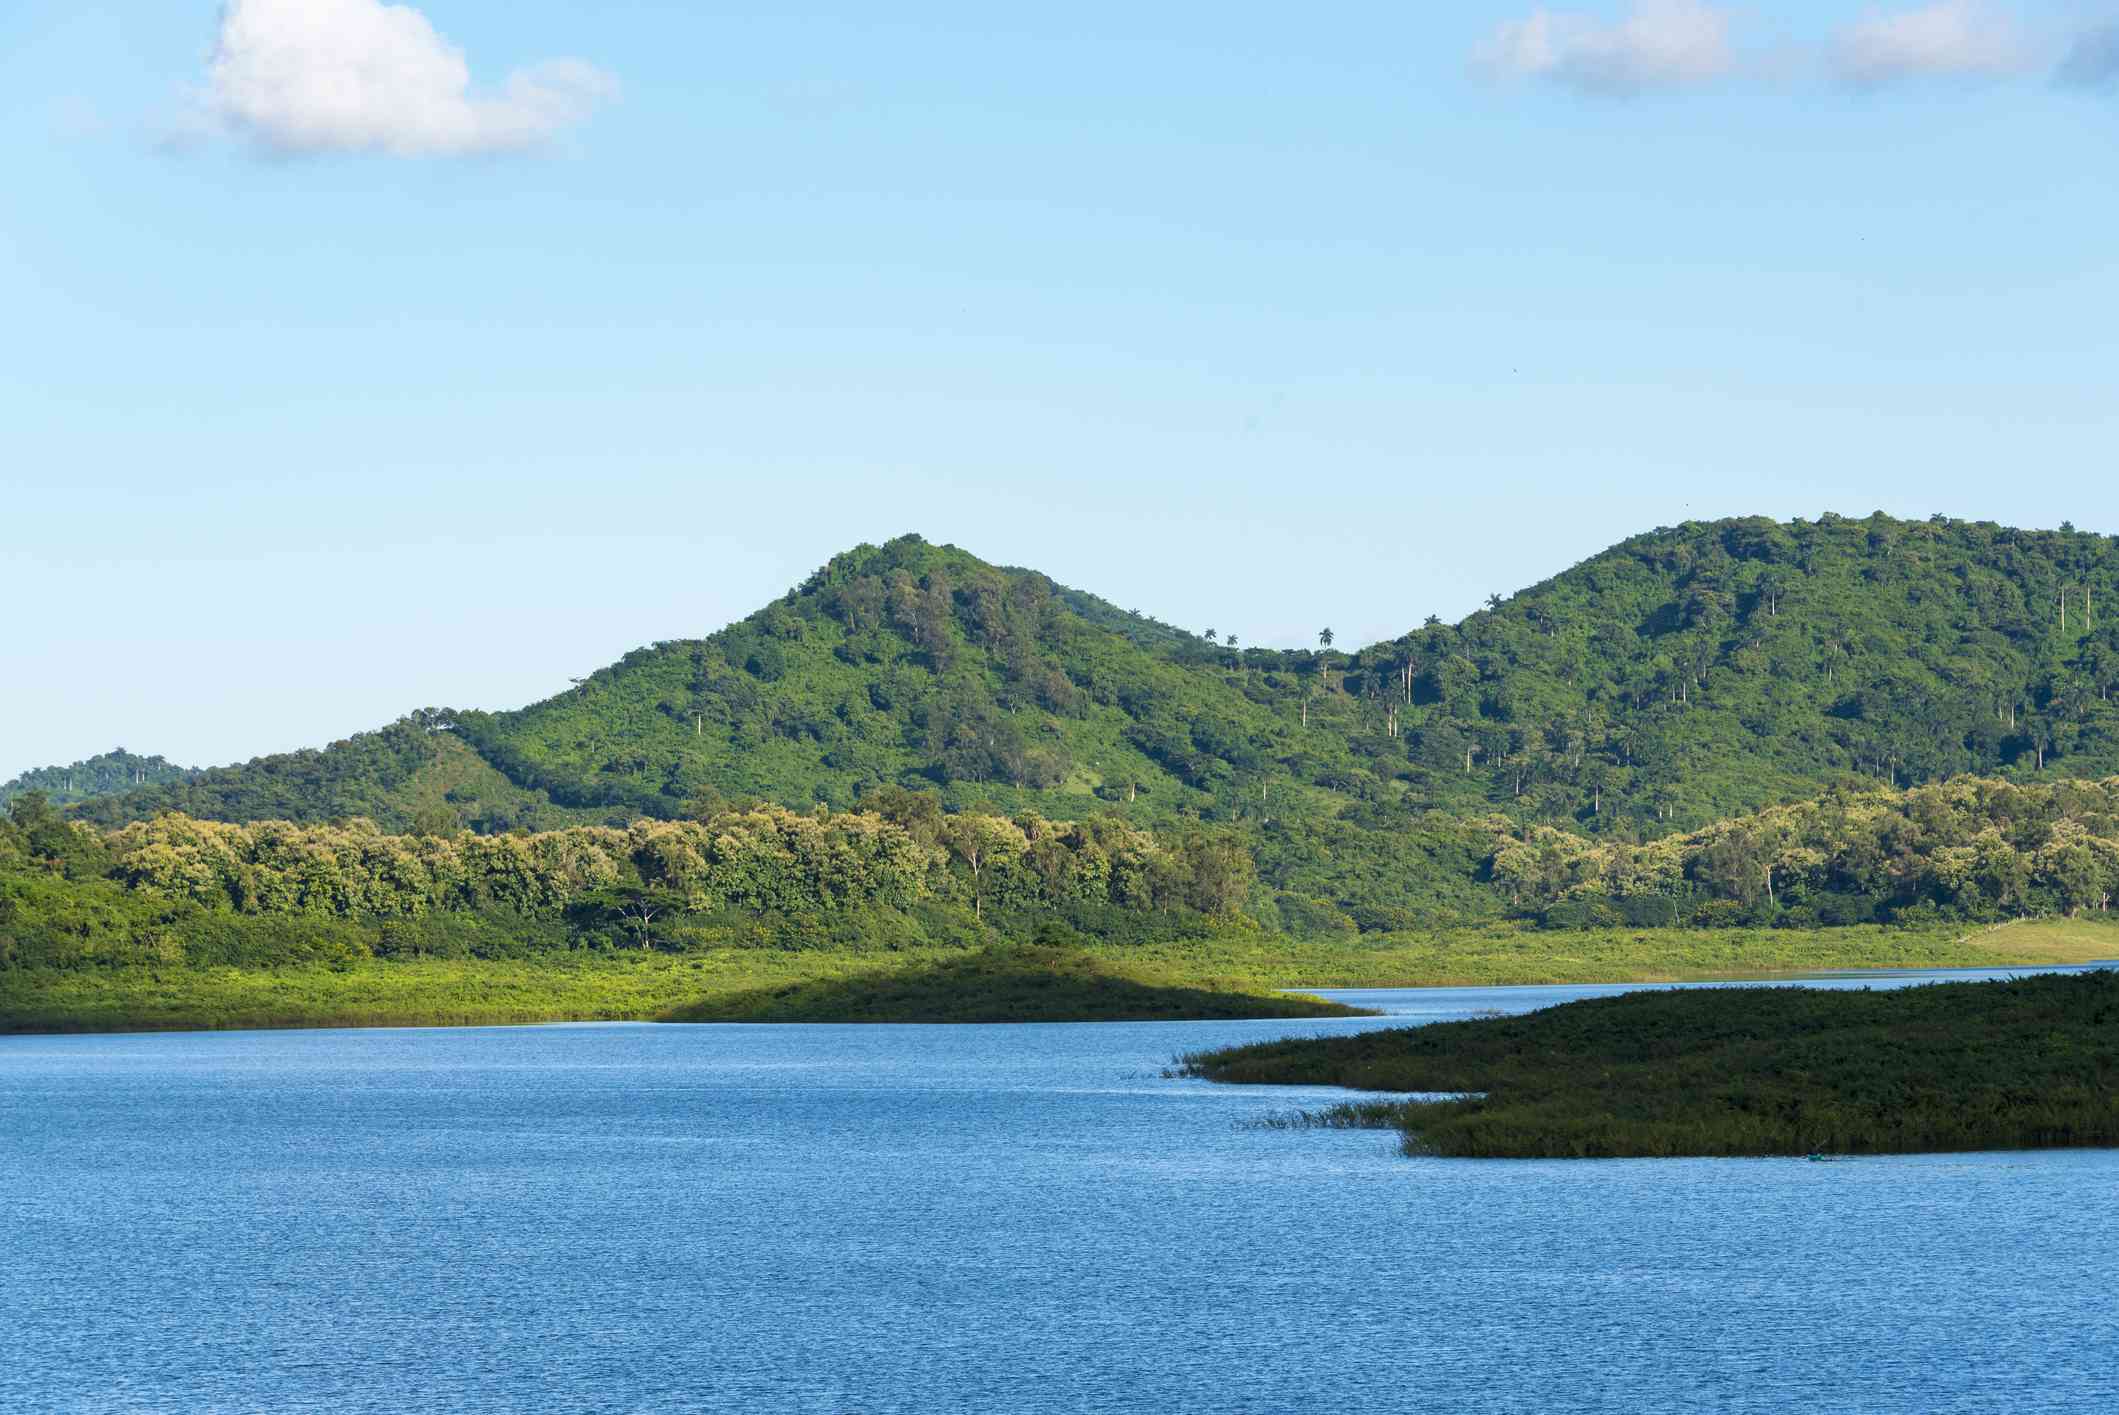 color azul vibrante del Lago de Hanabanilla rodeado de follaje verde bajo con las exuberantes montañas del Escambray cubiertas de verde en la distancia bajo un cielo azul con una ligera capa de nubes blancas